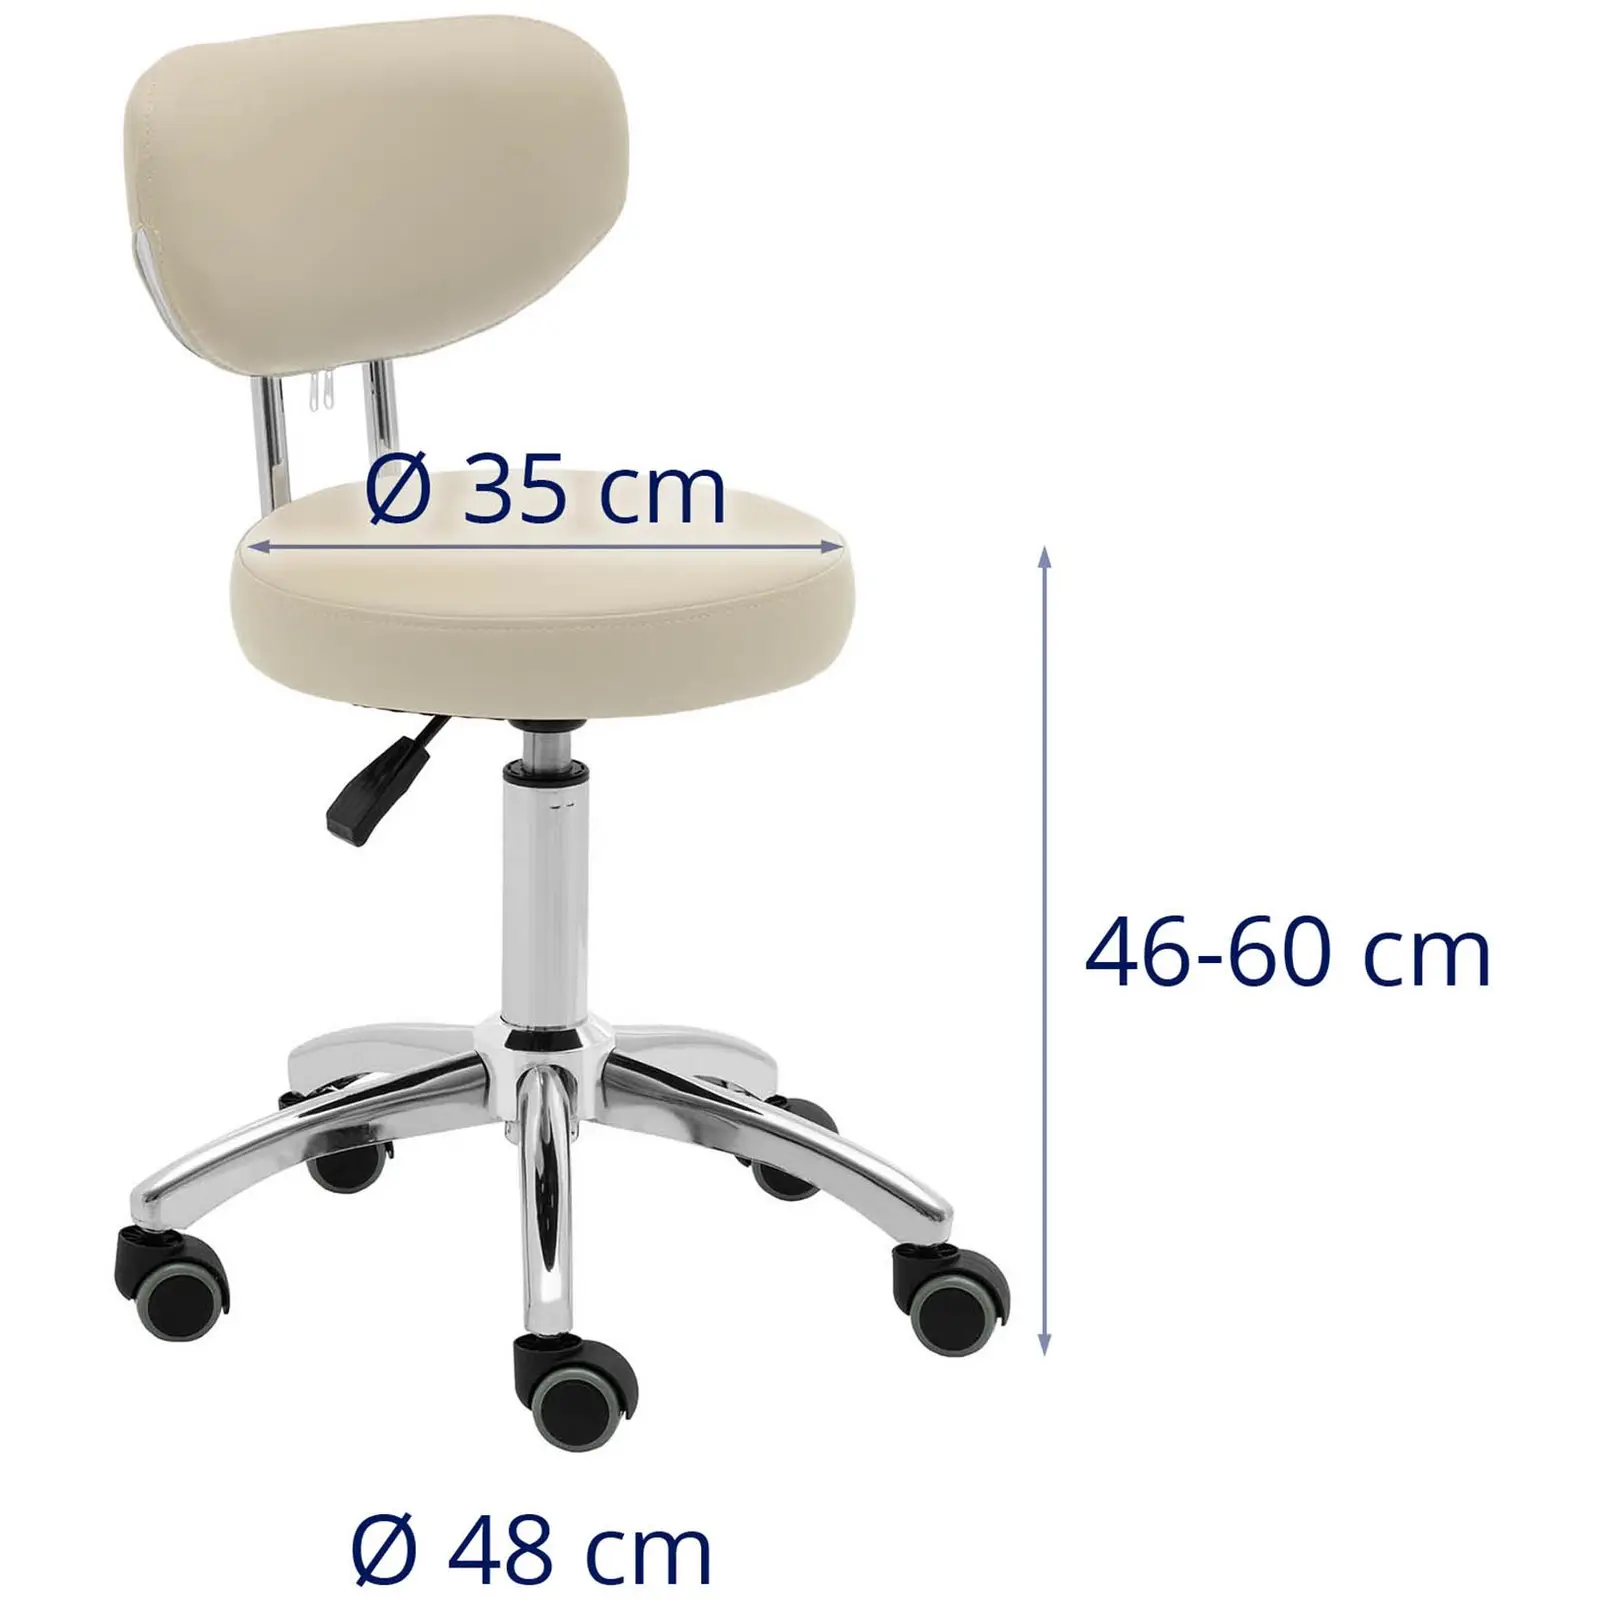 Židle a stolička na kolečkách s opěradlem - béžová